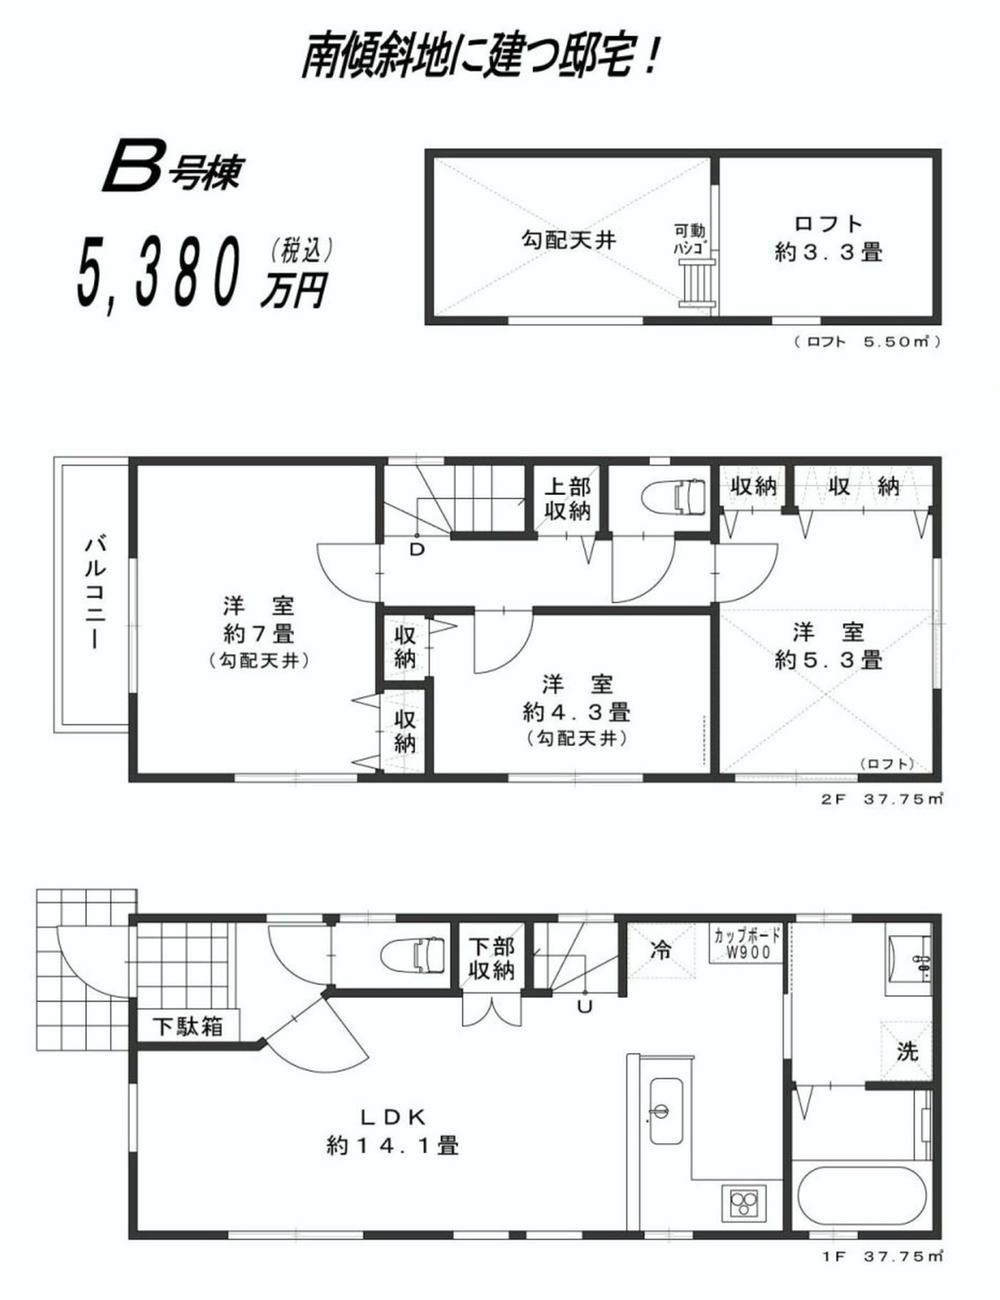 Floor plan. 53,800,000 yen, 3LDK, Land area 76.05 sq m , Building area 75.5 sq m floor plan